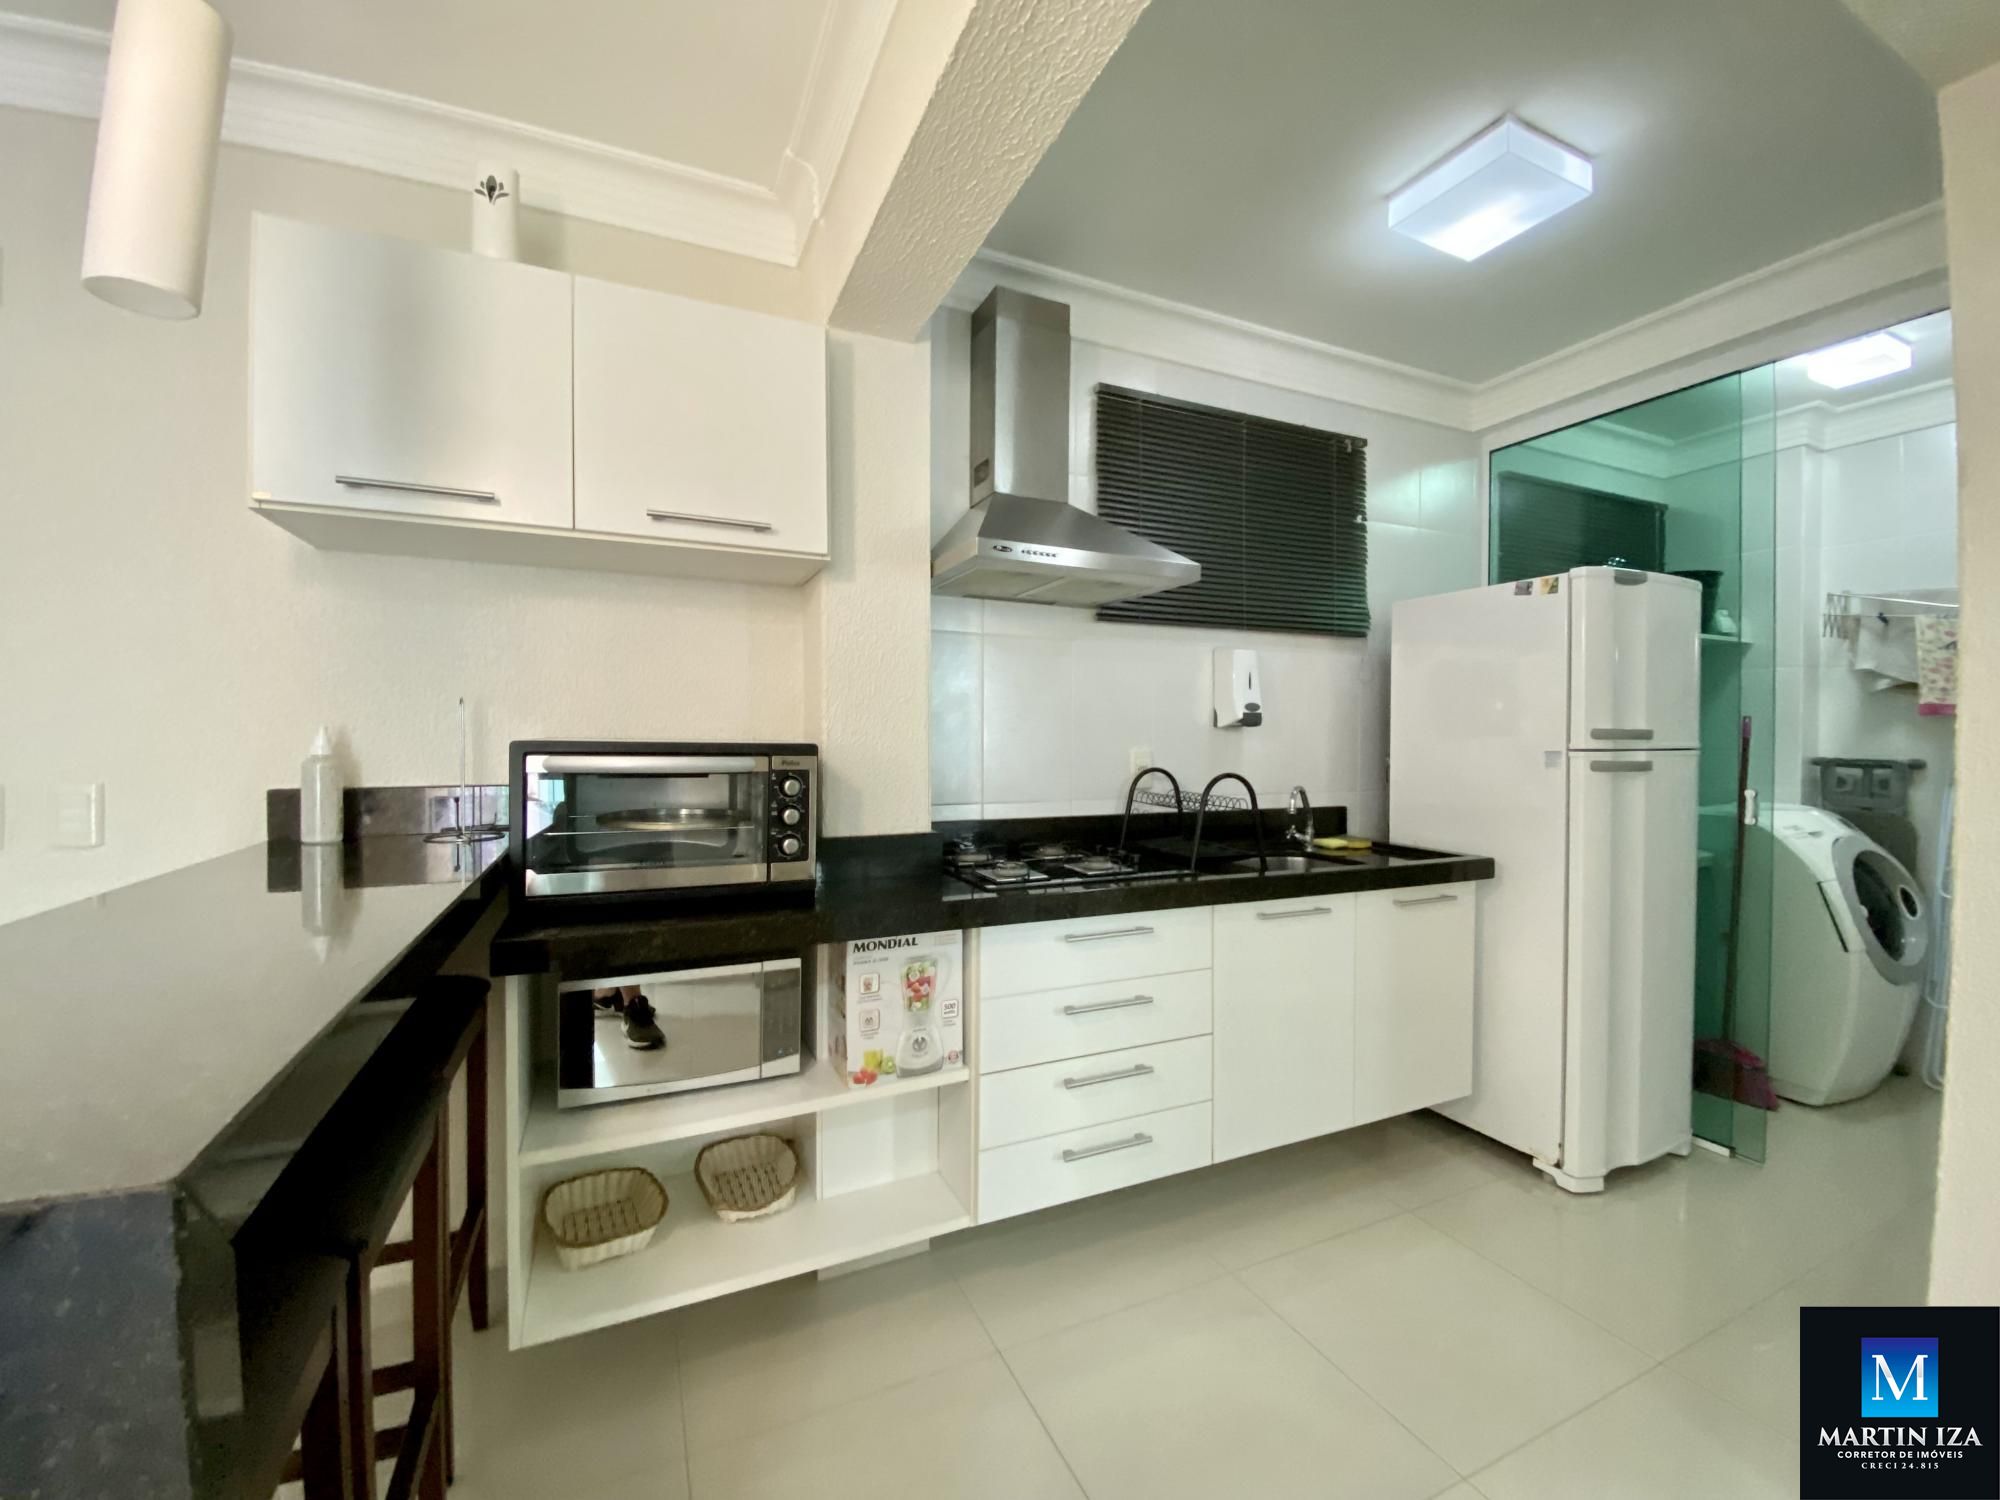 Apartamento com 1 Dormitórios para alugar, 45 m² por R$ 300,00